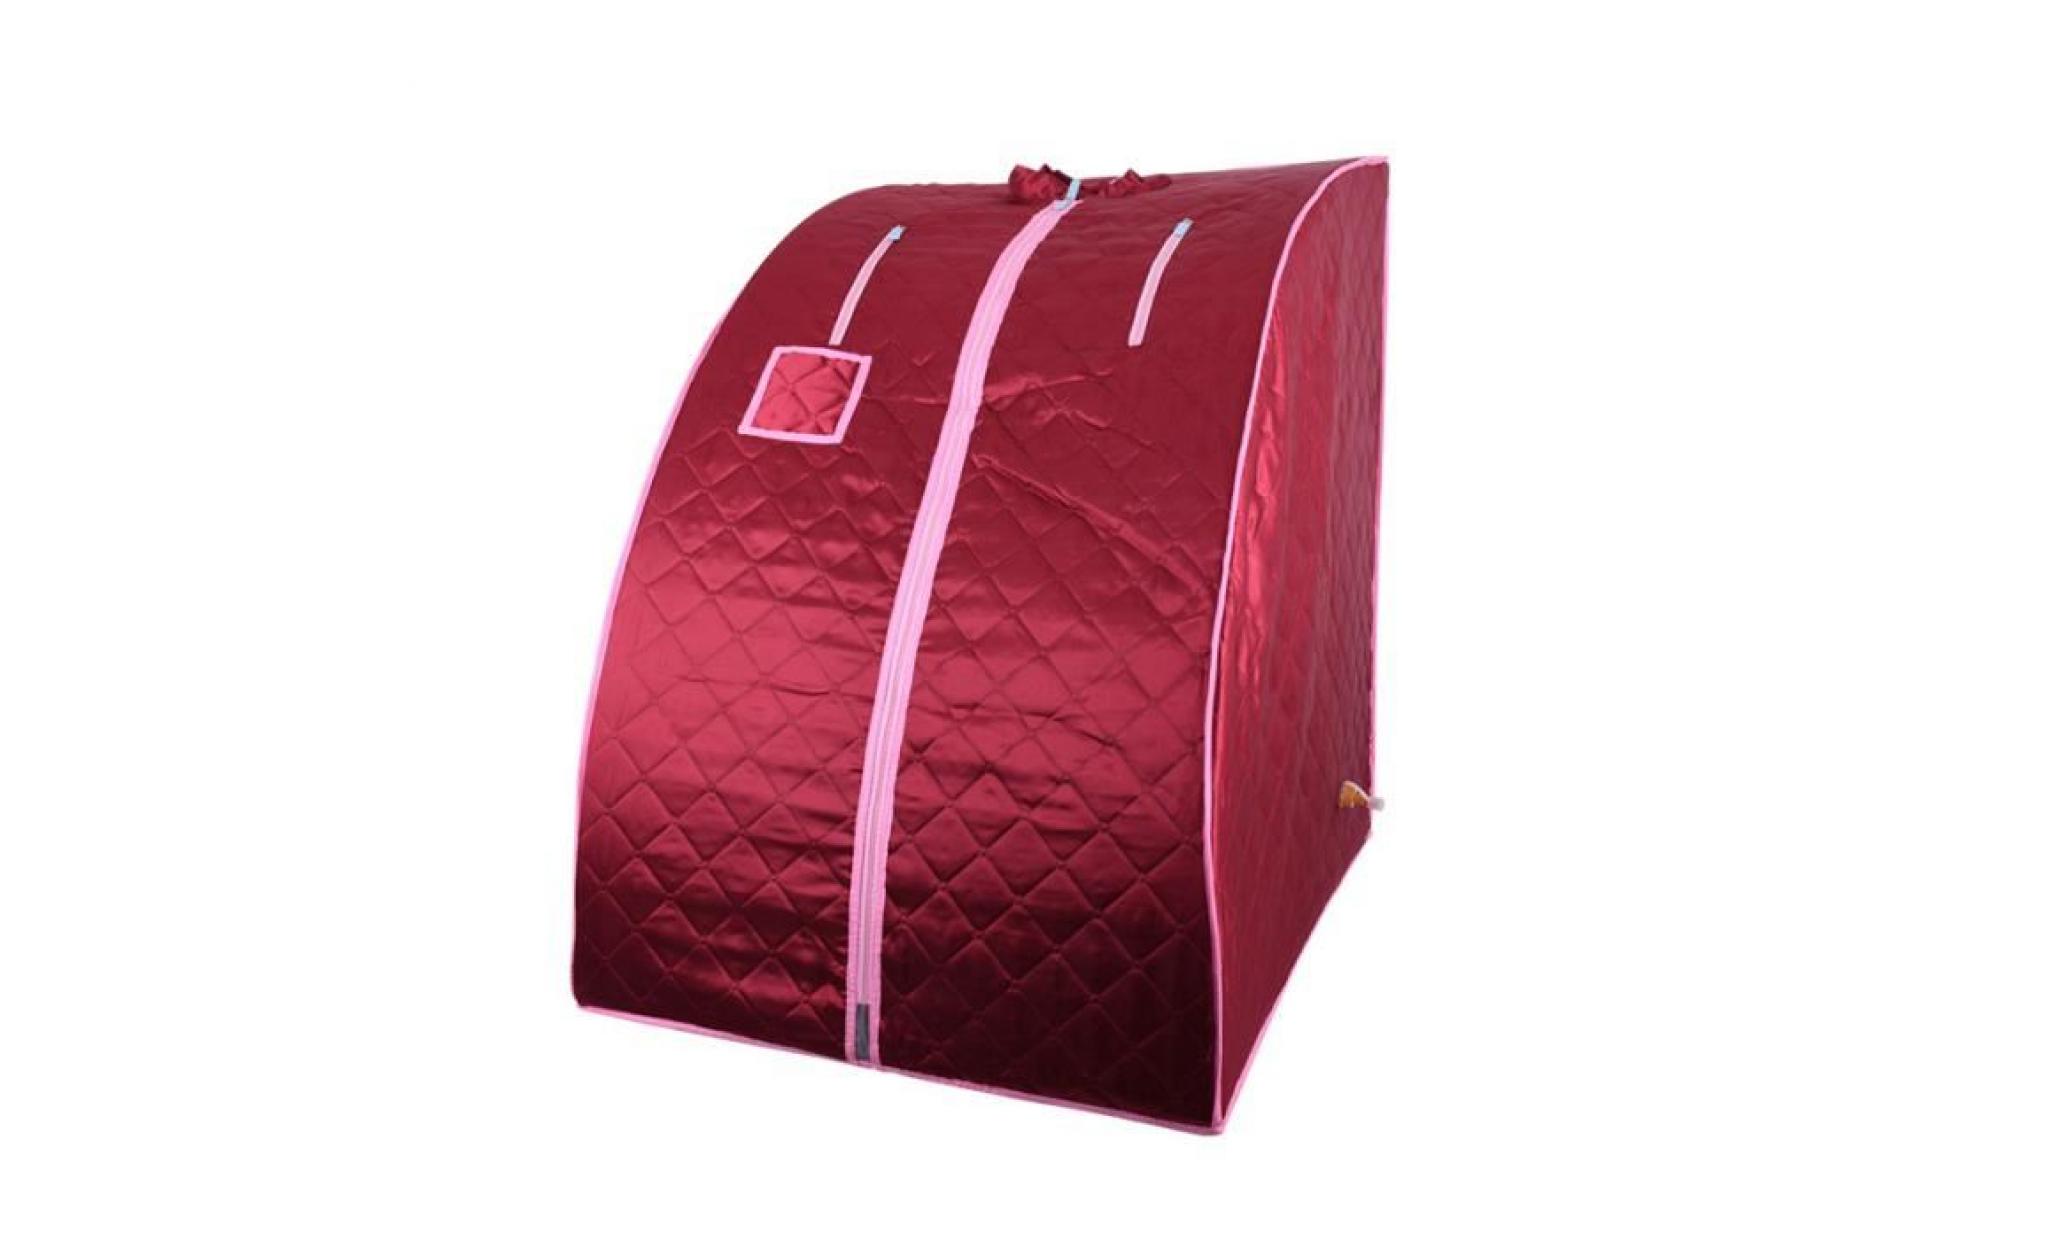 miss   cabine de sauna vapeur sauna maison portable mobile hammam et sauna   rouge pas cher